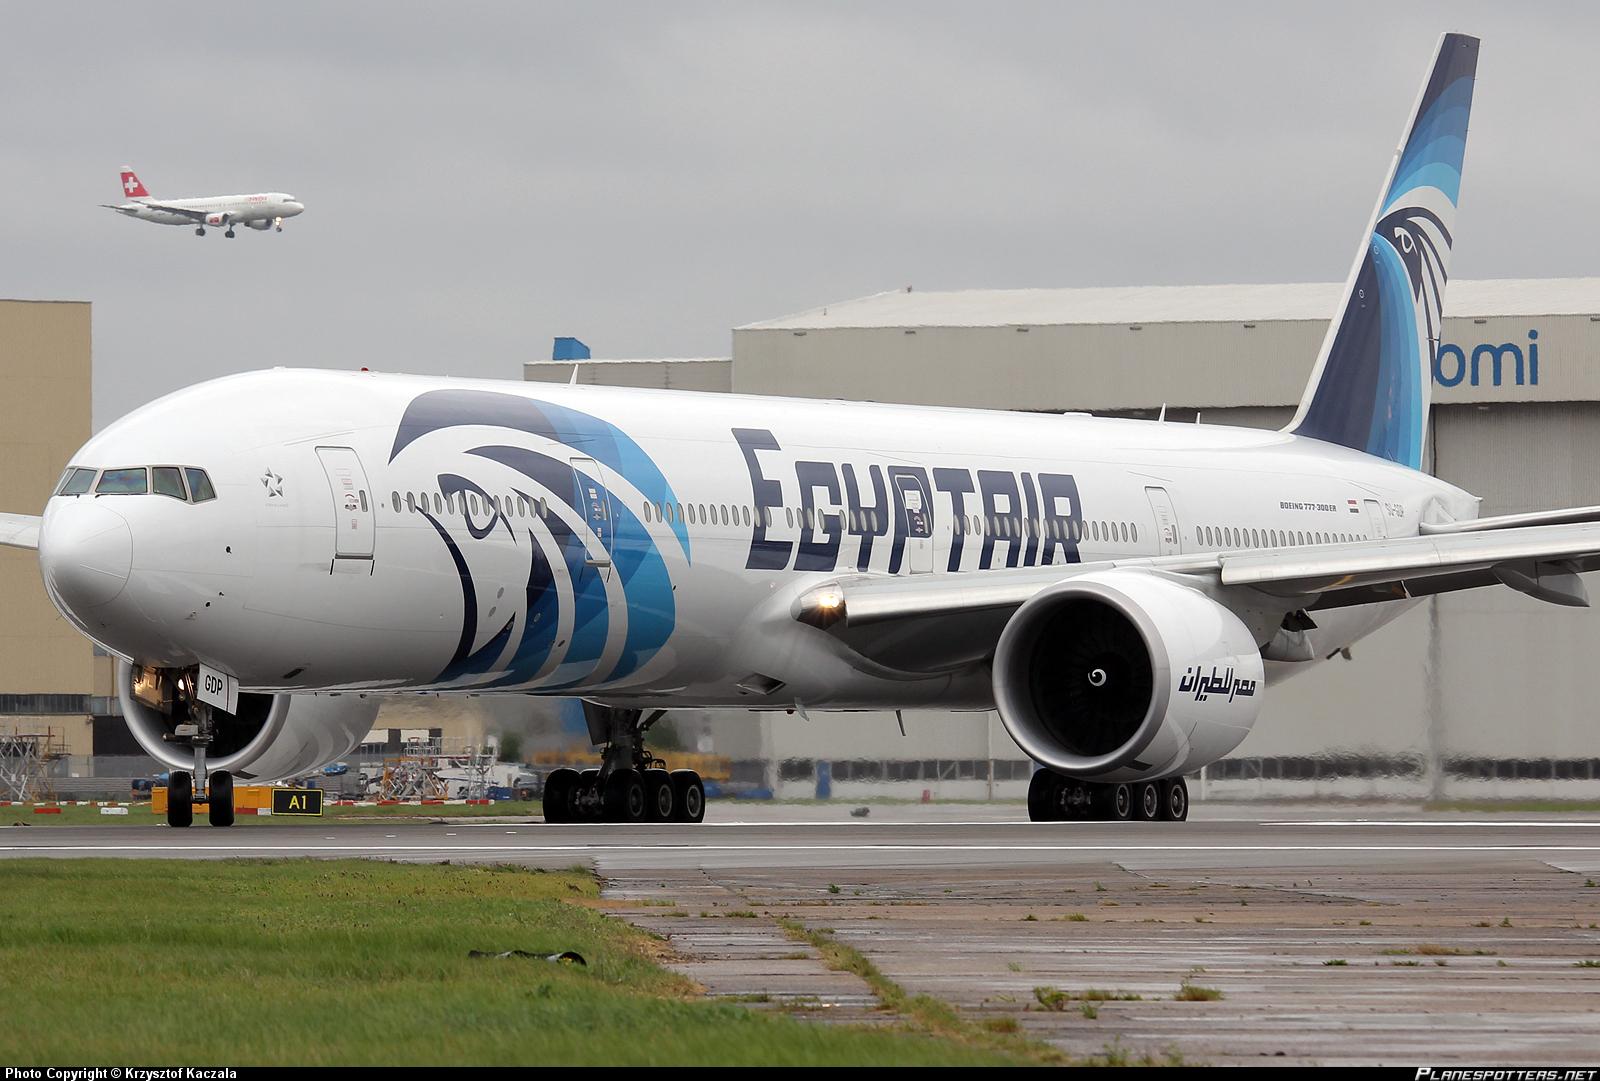 هاشتاج “EgyptAir” يتصدر “تويتر”.. وحزن عارم على ضحايا الطائرة المصرية